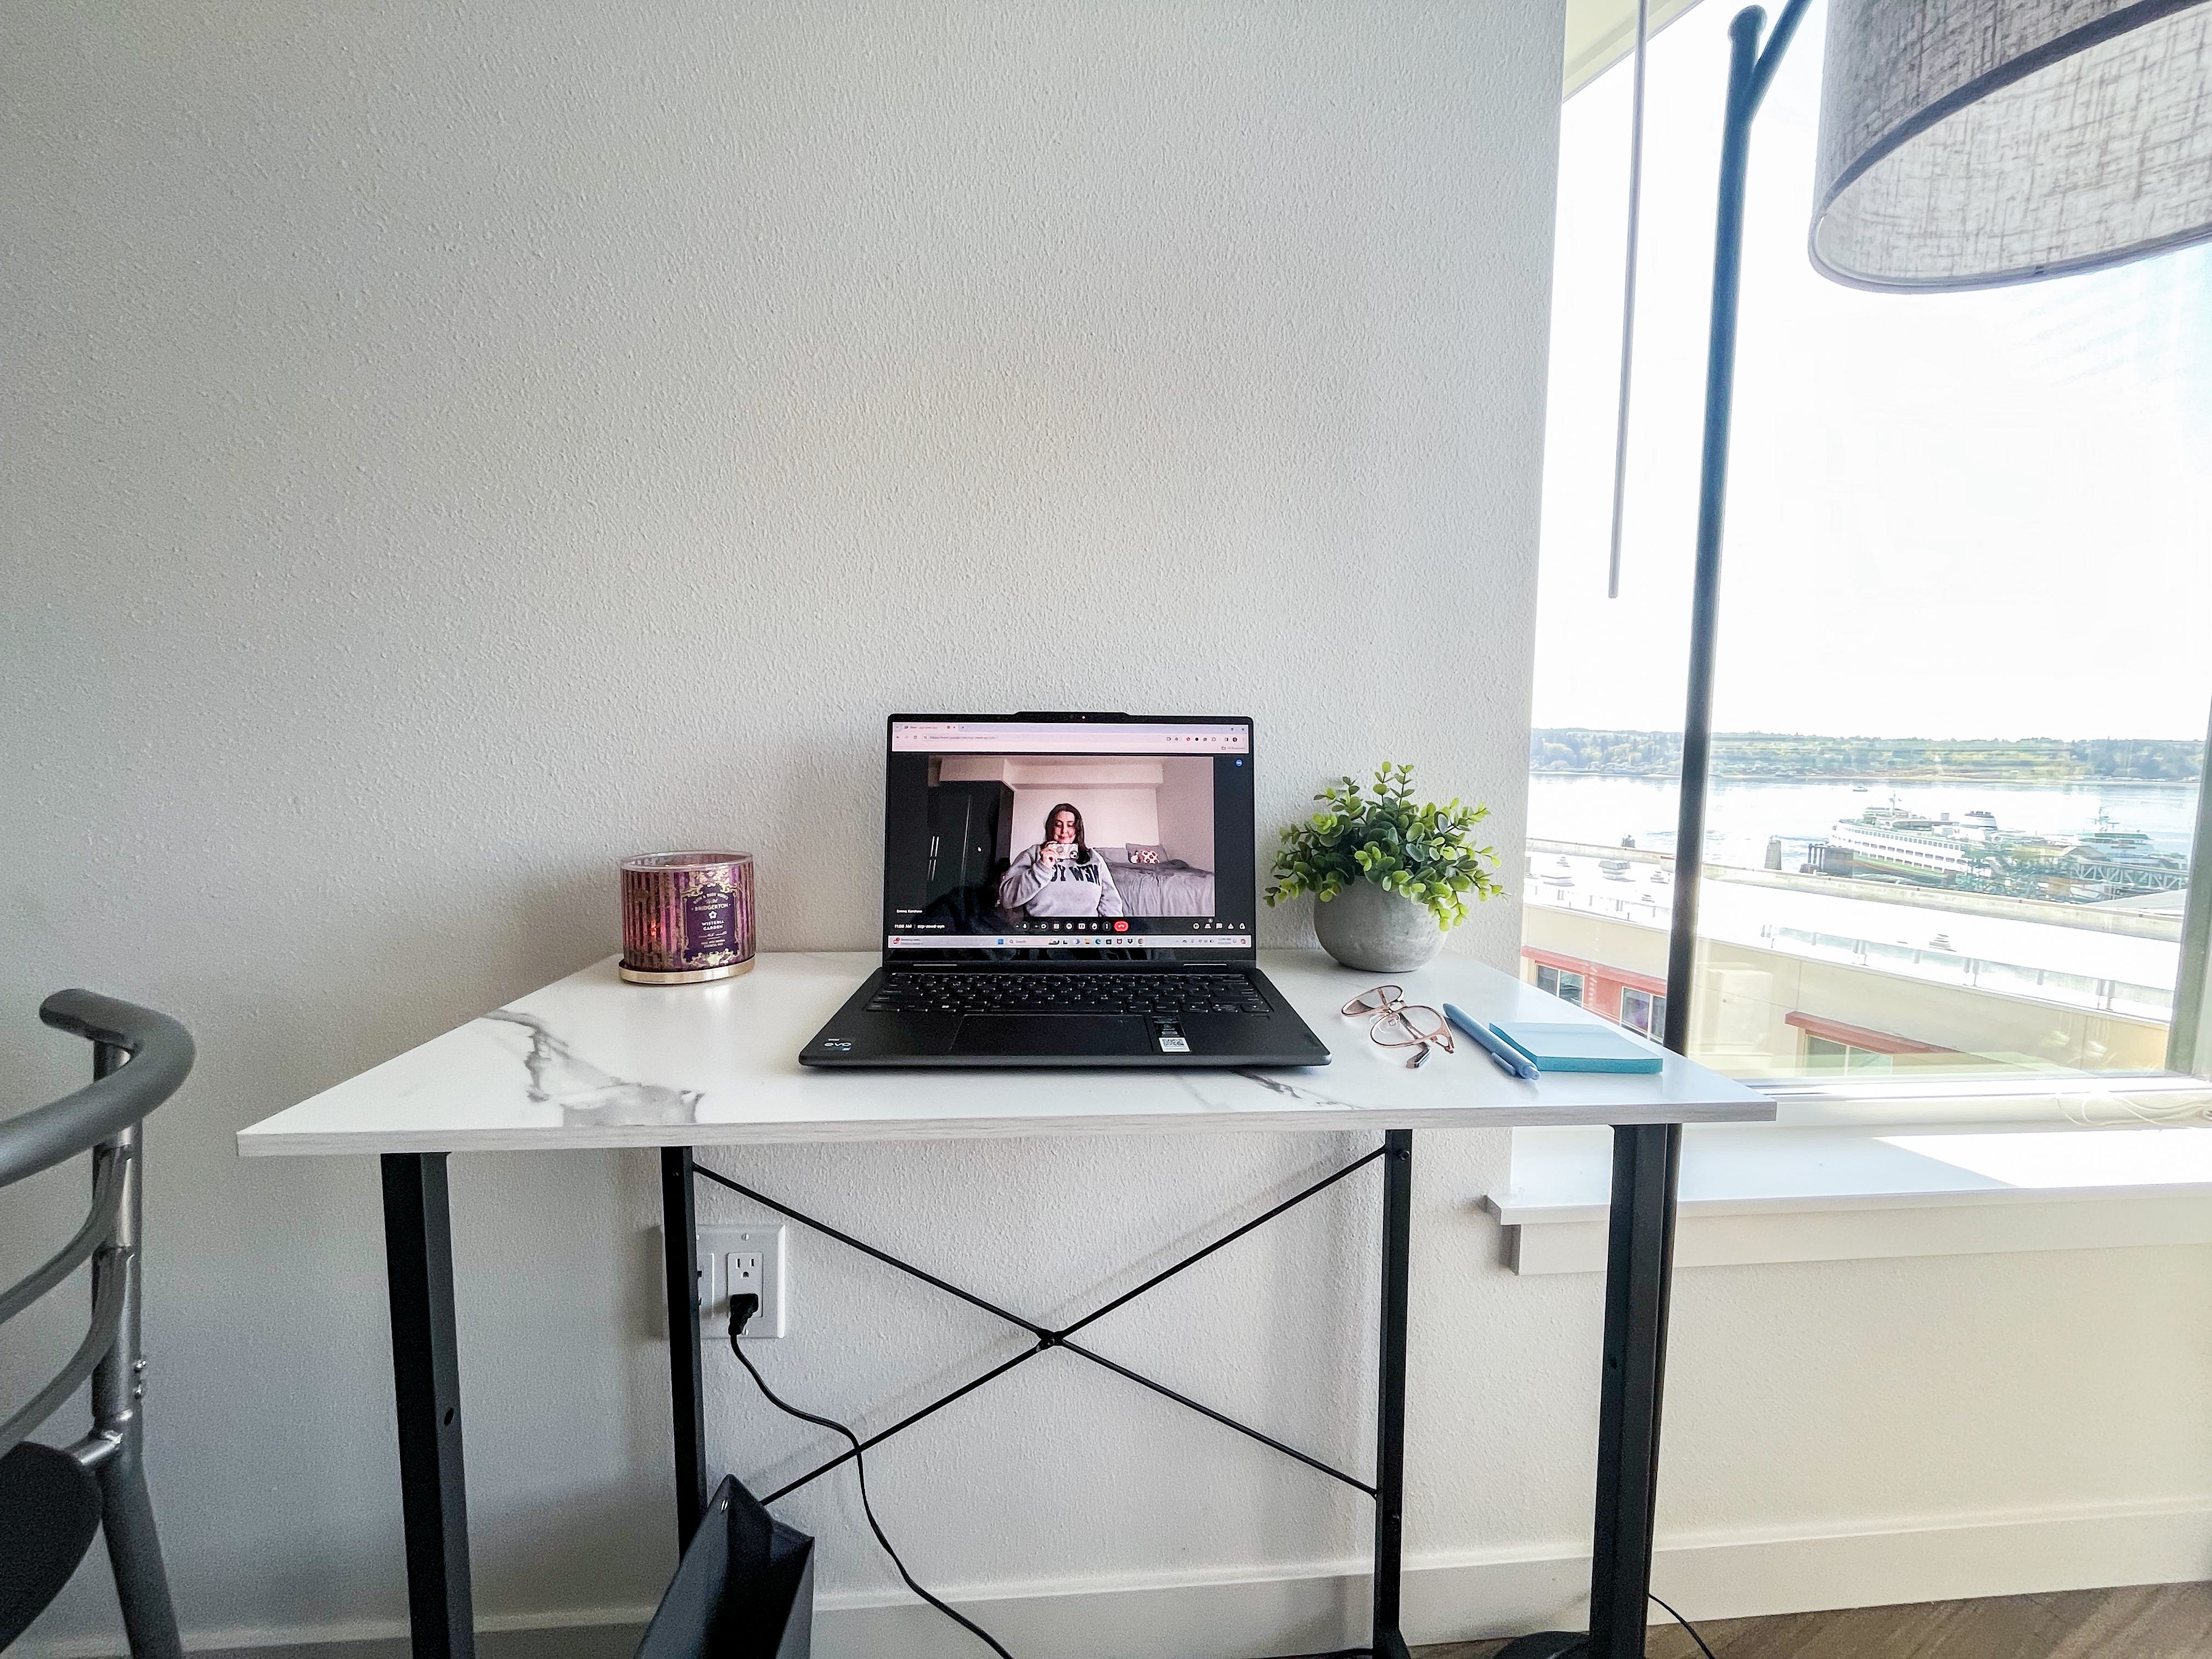 Vorderansicht eines weißen Schreibtisches mit einem Laptop-Bildschirm und einer Kamera, auf der der Autor zu sehen ist.  Der Tisch steht neben einer Lampe und einem Fenster